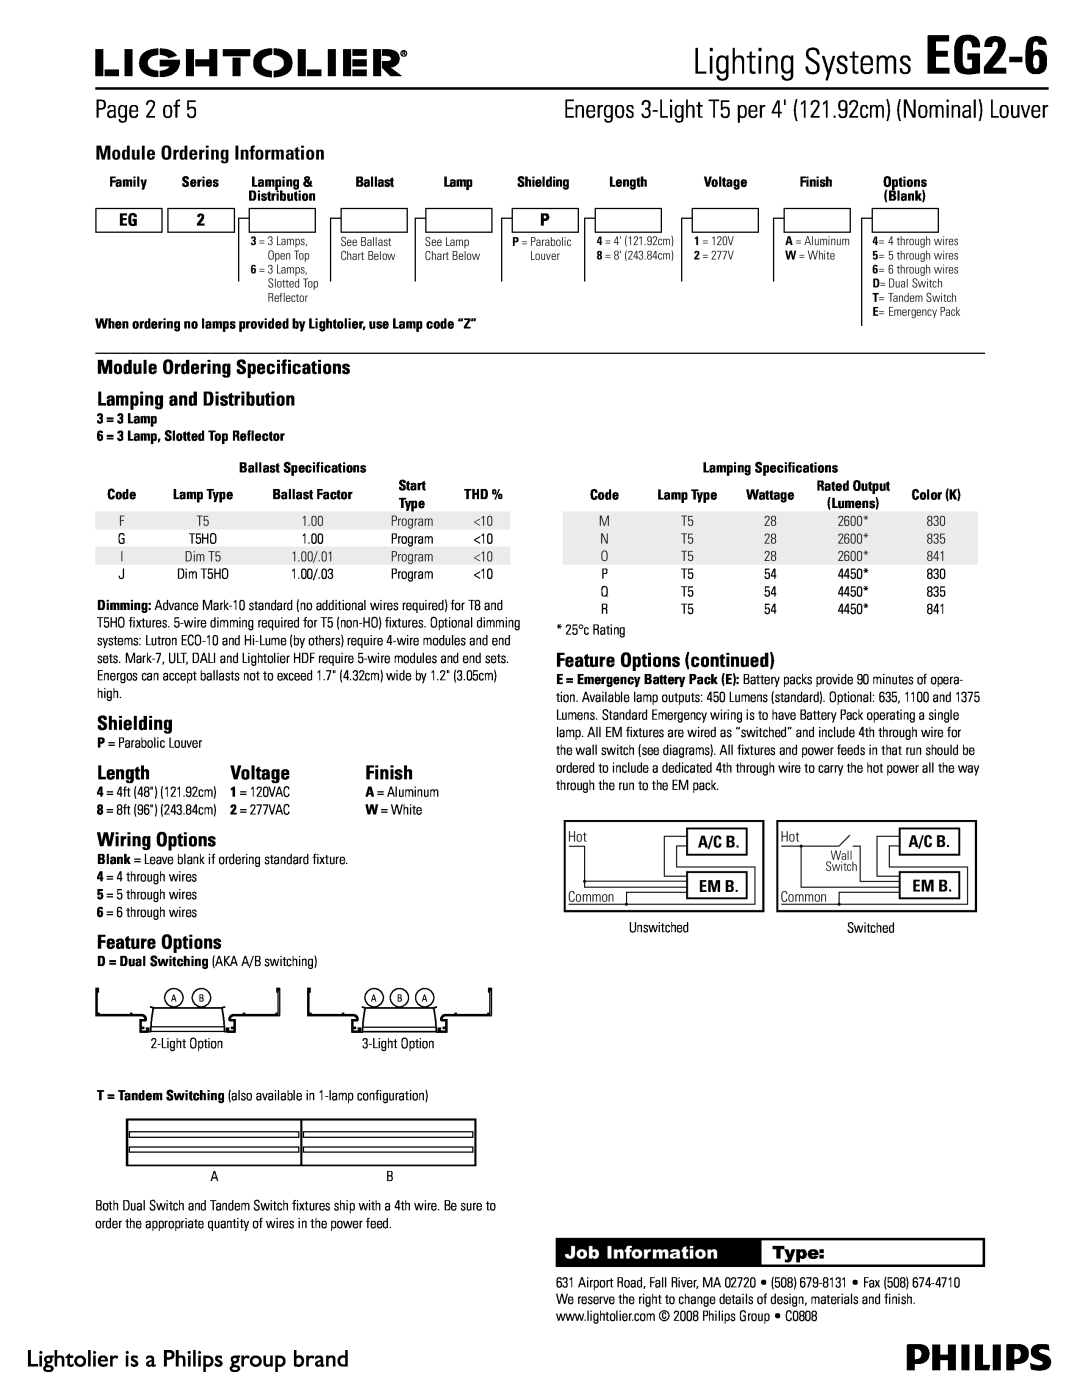 Lightolier specifications 1BHFPG, Lighting Systems EG2-6 